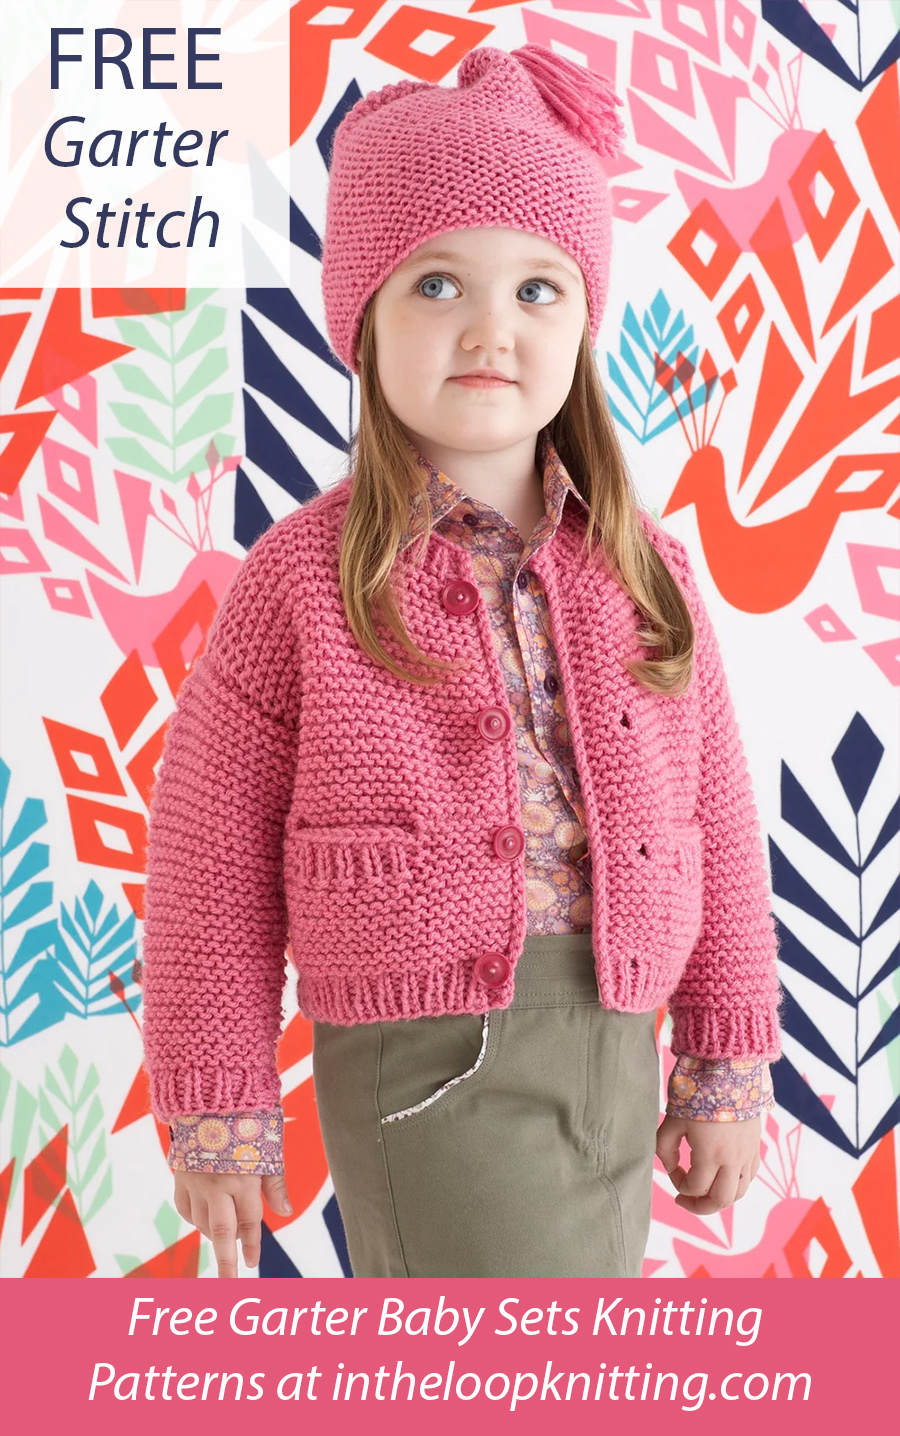 Free Emma Hat and Cardigan Set Knitting Pattern Garter Stitch